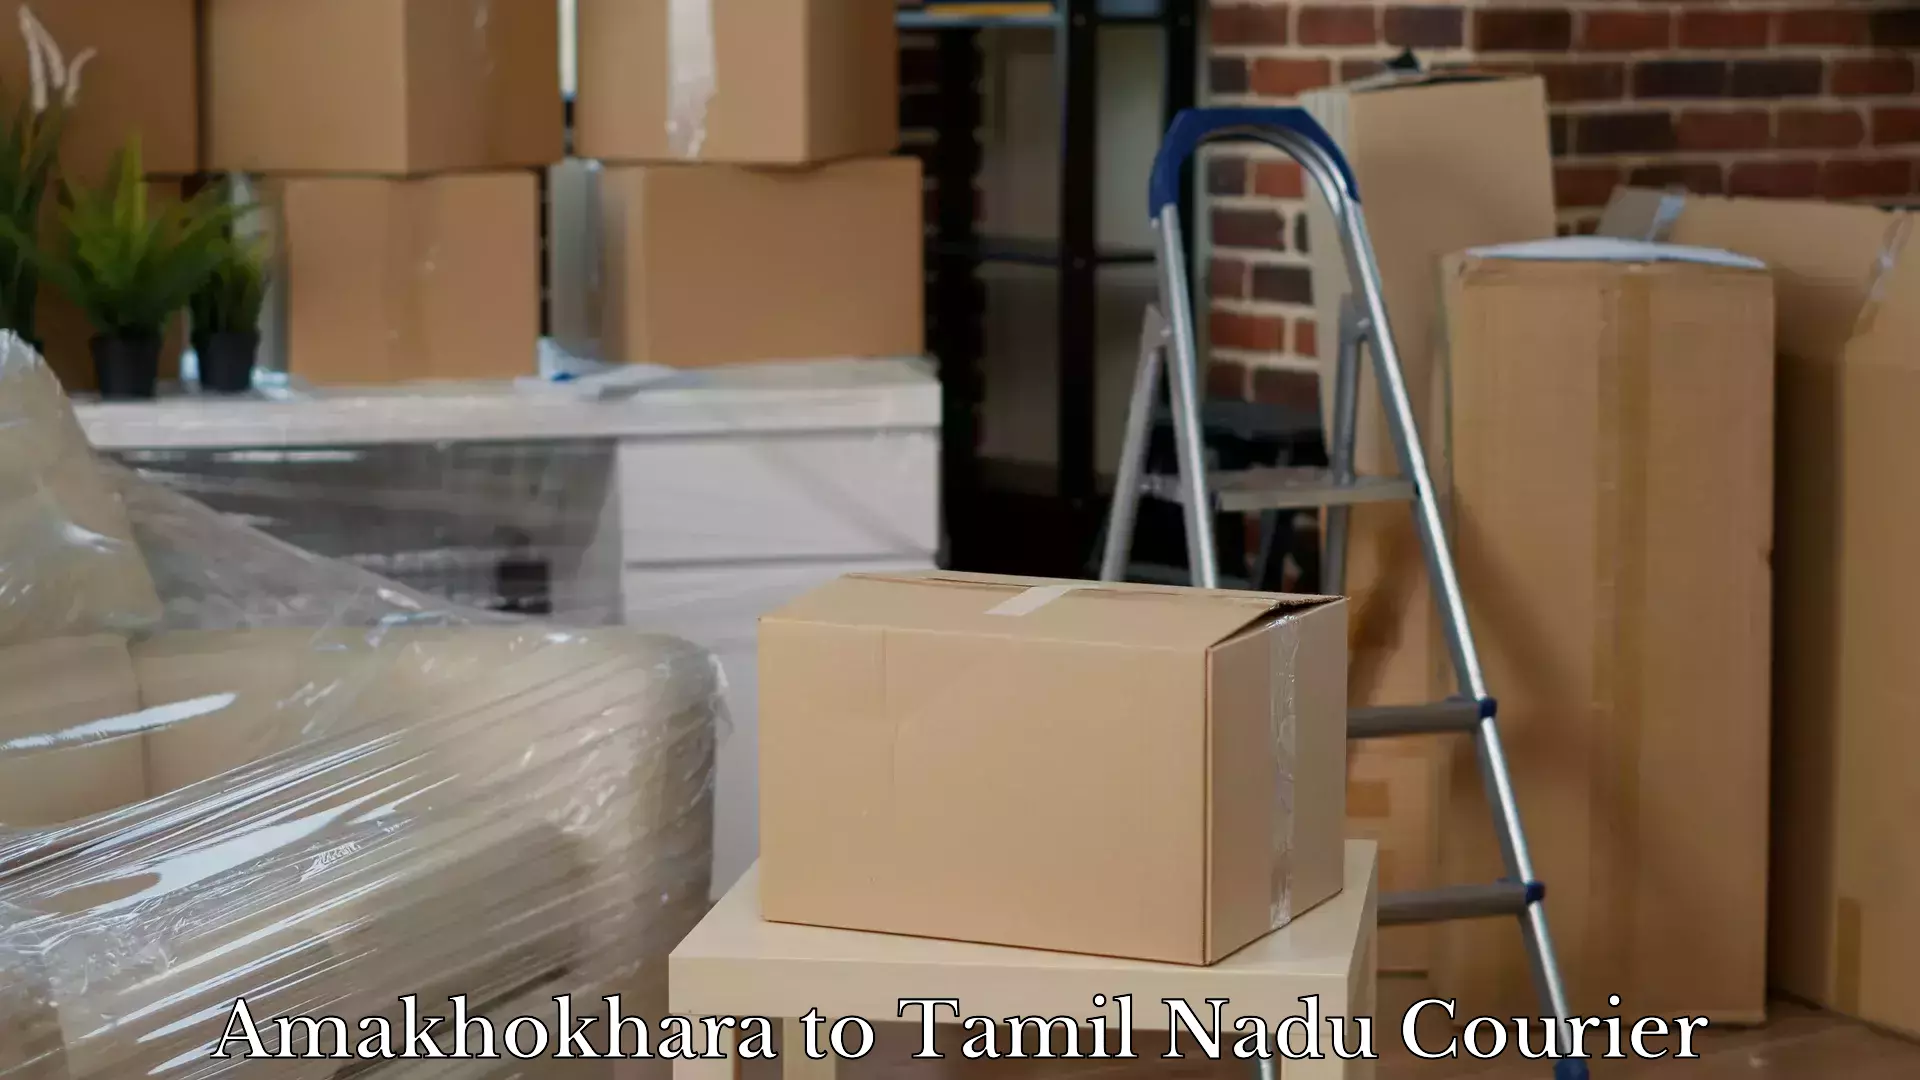 Luggage shipping service Amakhokhara to Polur